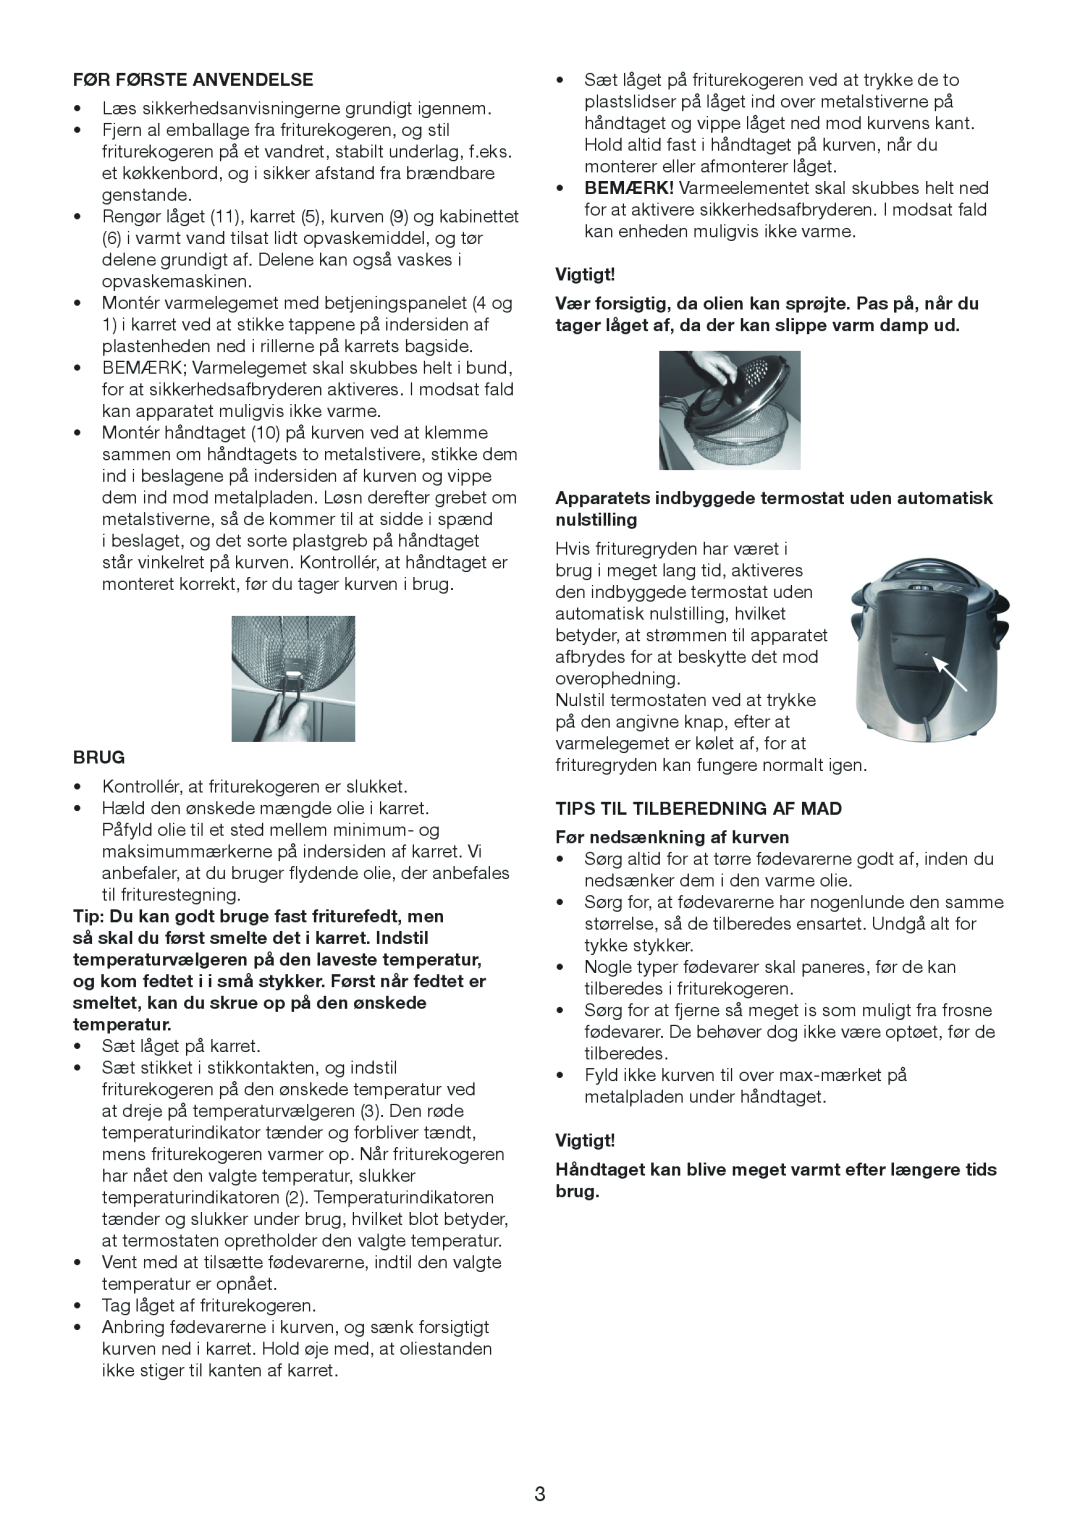 Melissa 643-198 manual Før Første Anvendelse, Brug, Apparatets indbyggede termostat uden automatisk nulstilling, Vigtigt 